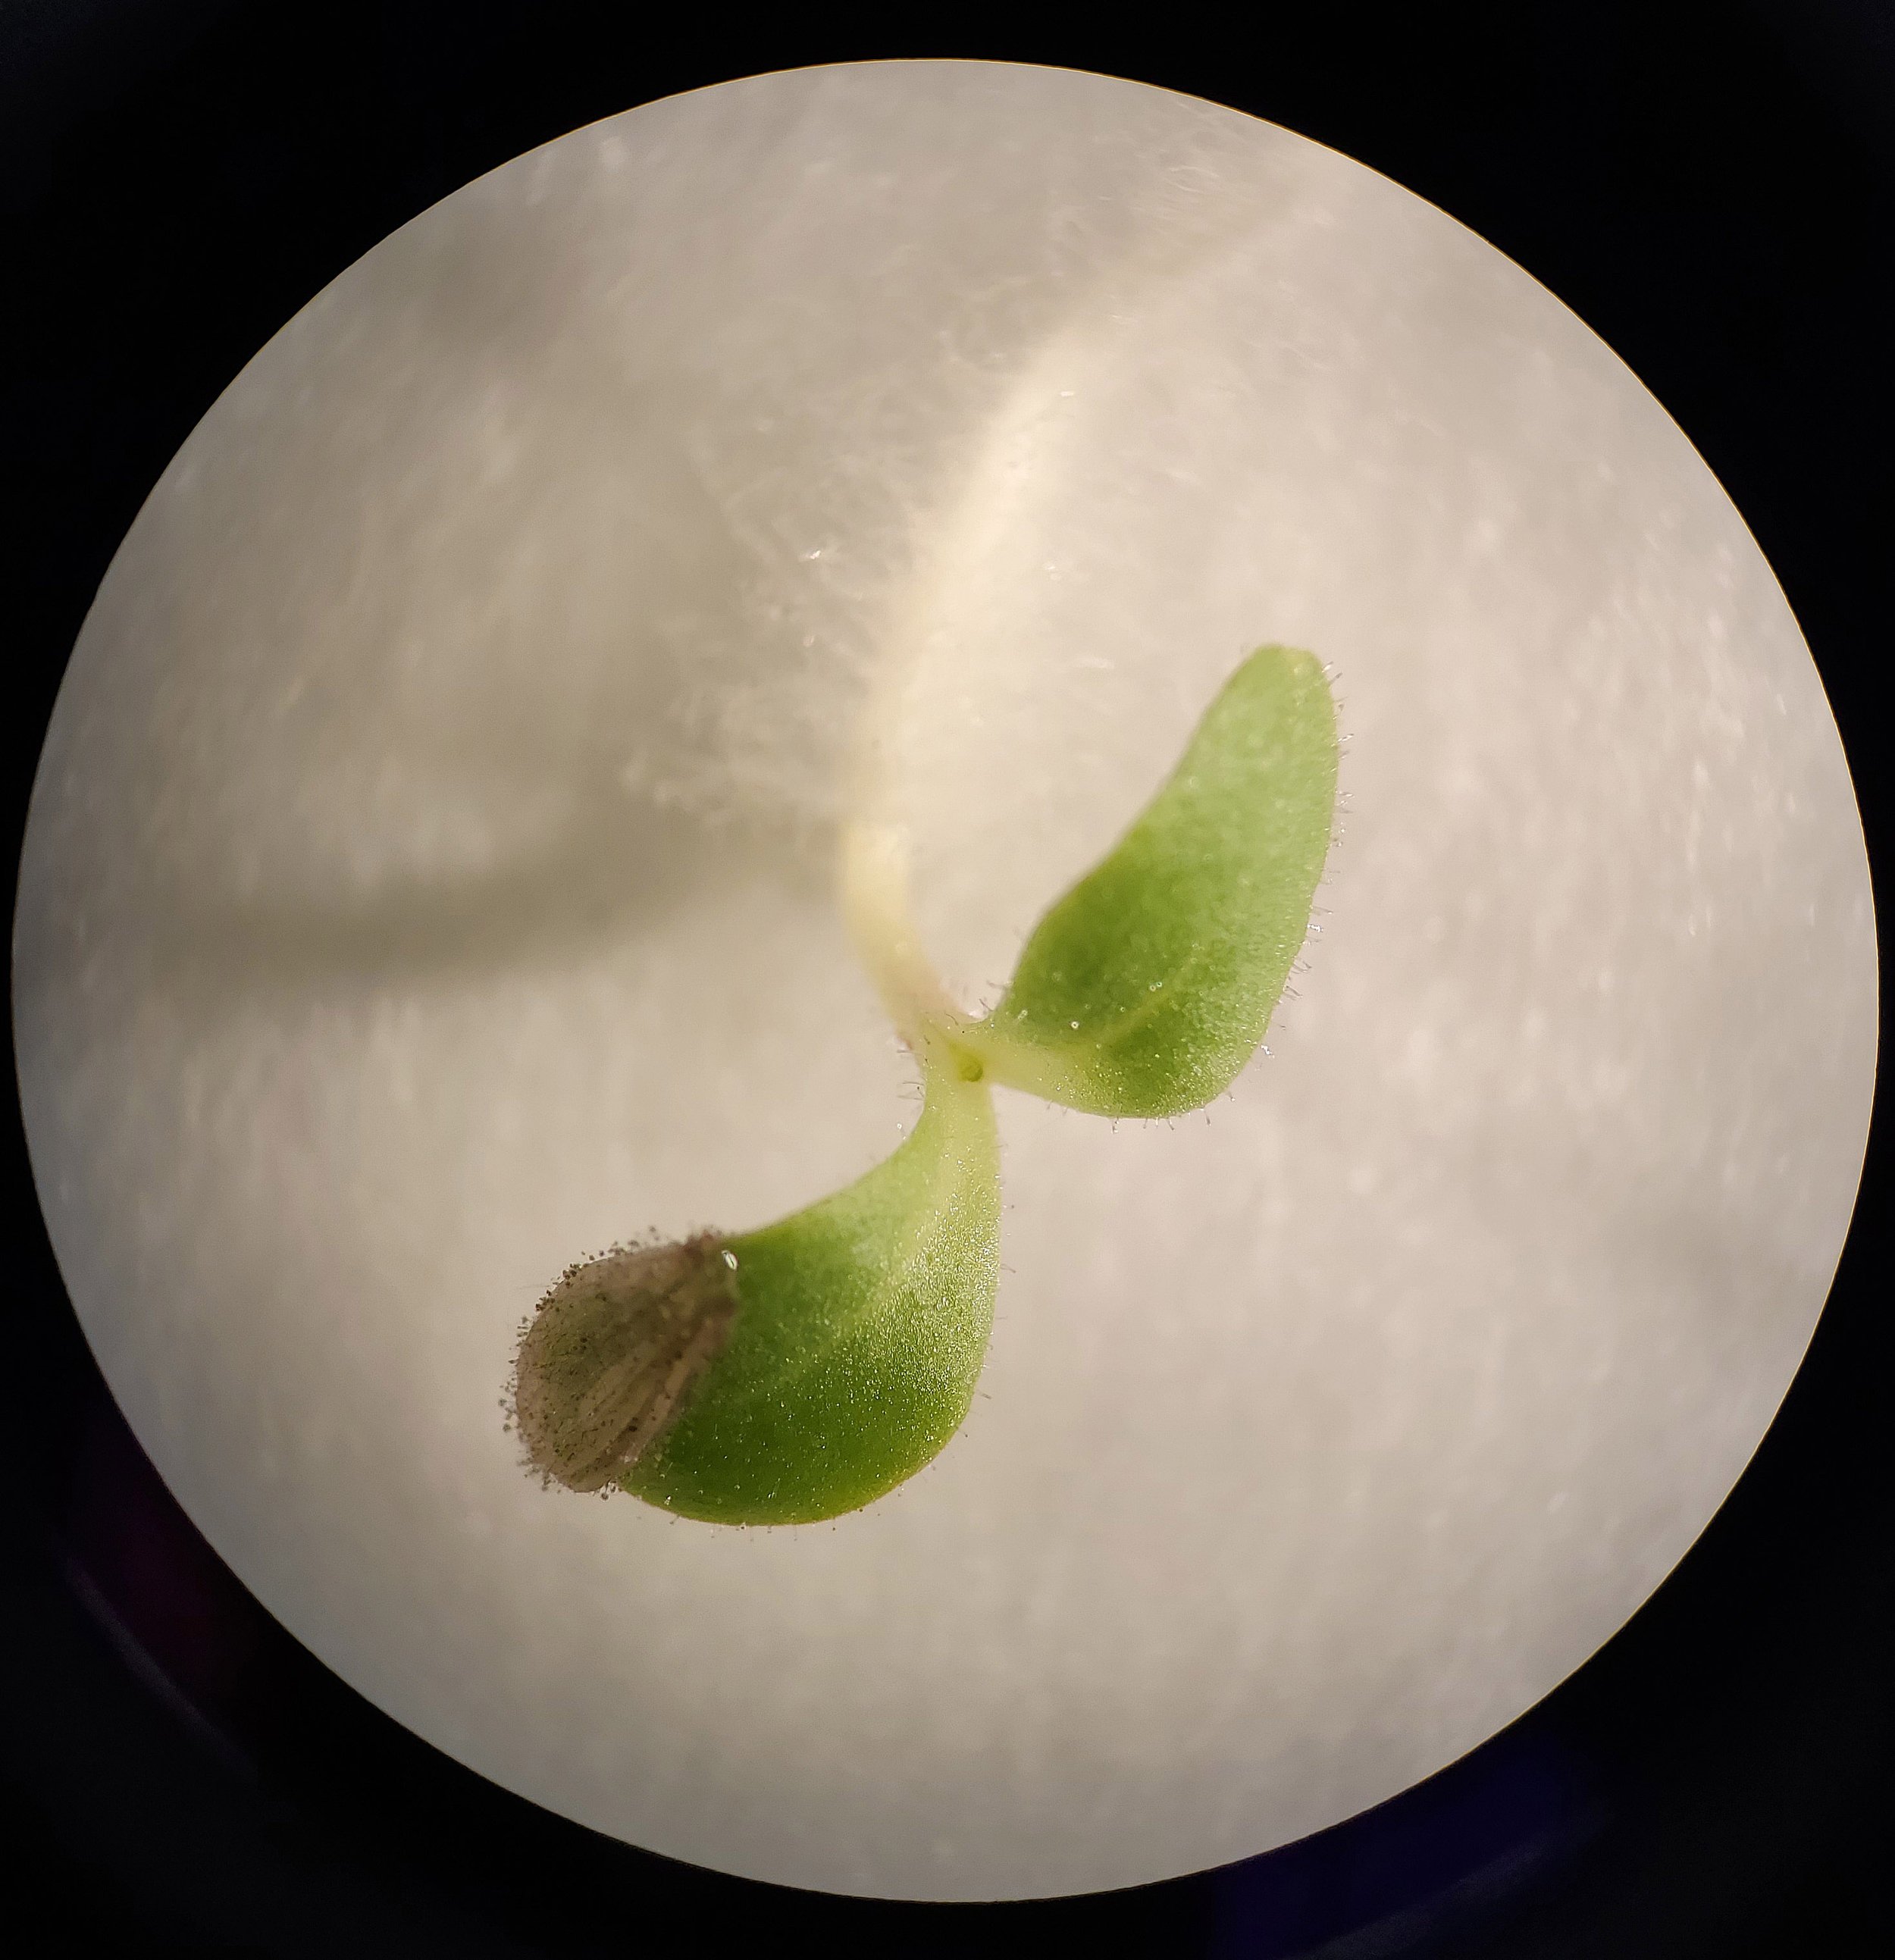 Lettuce seedling under microscope.